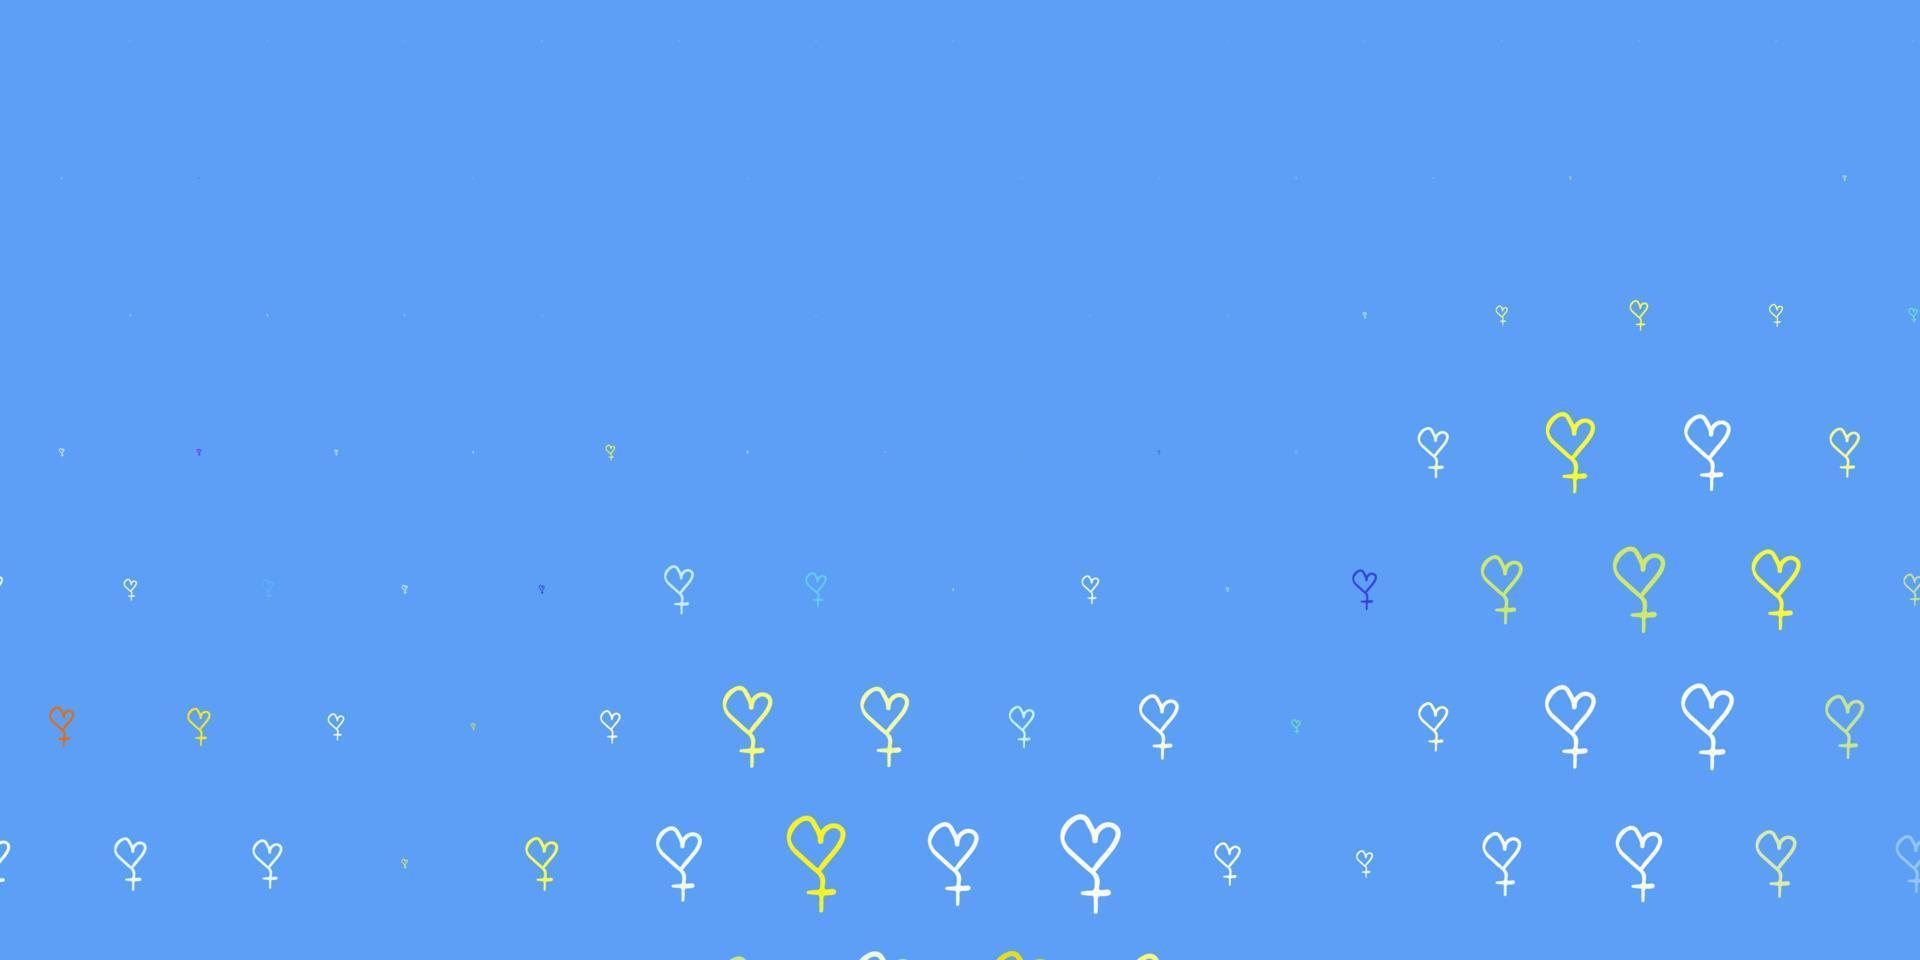 ljusblå, gul vektor bakgrund med kvinnor makt symboler.